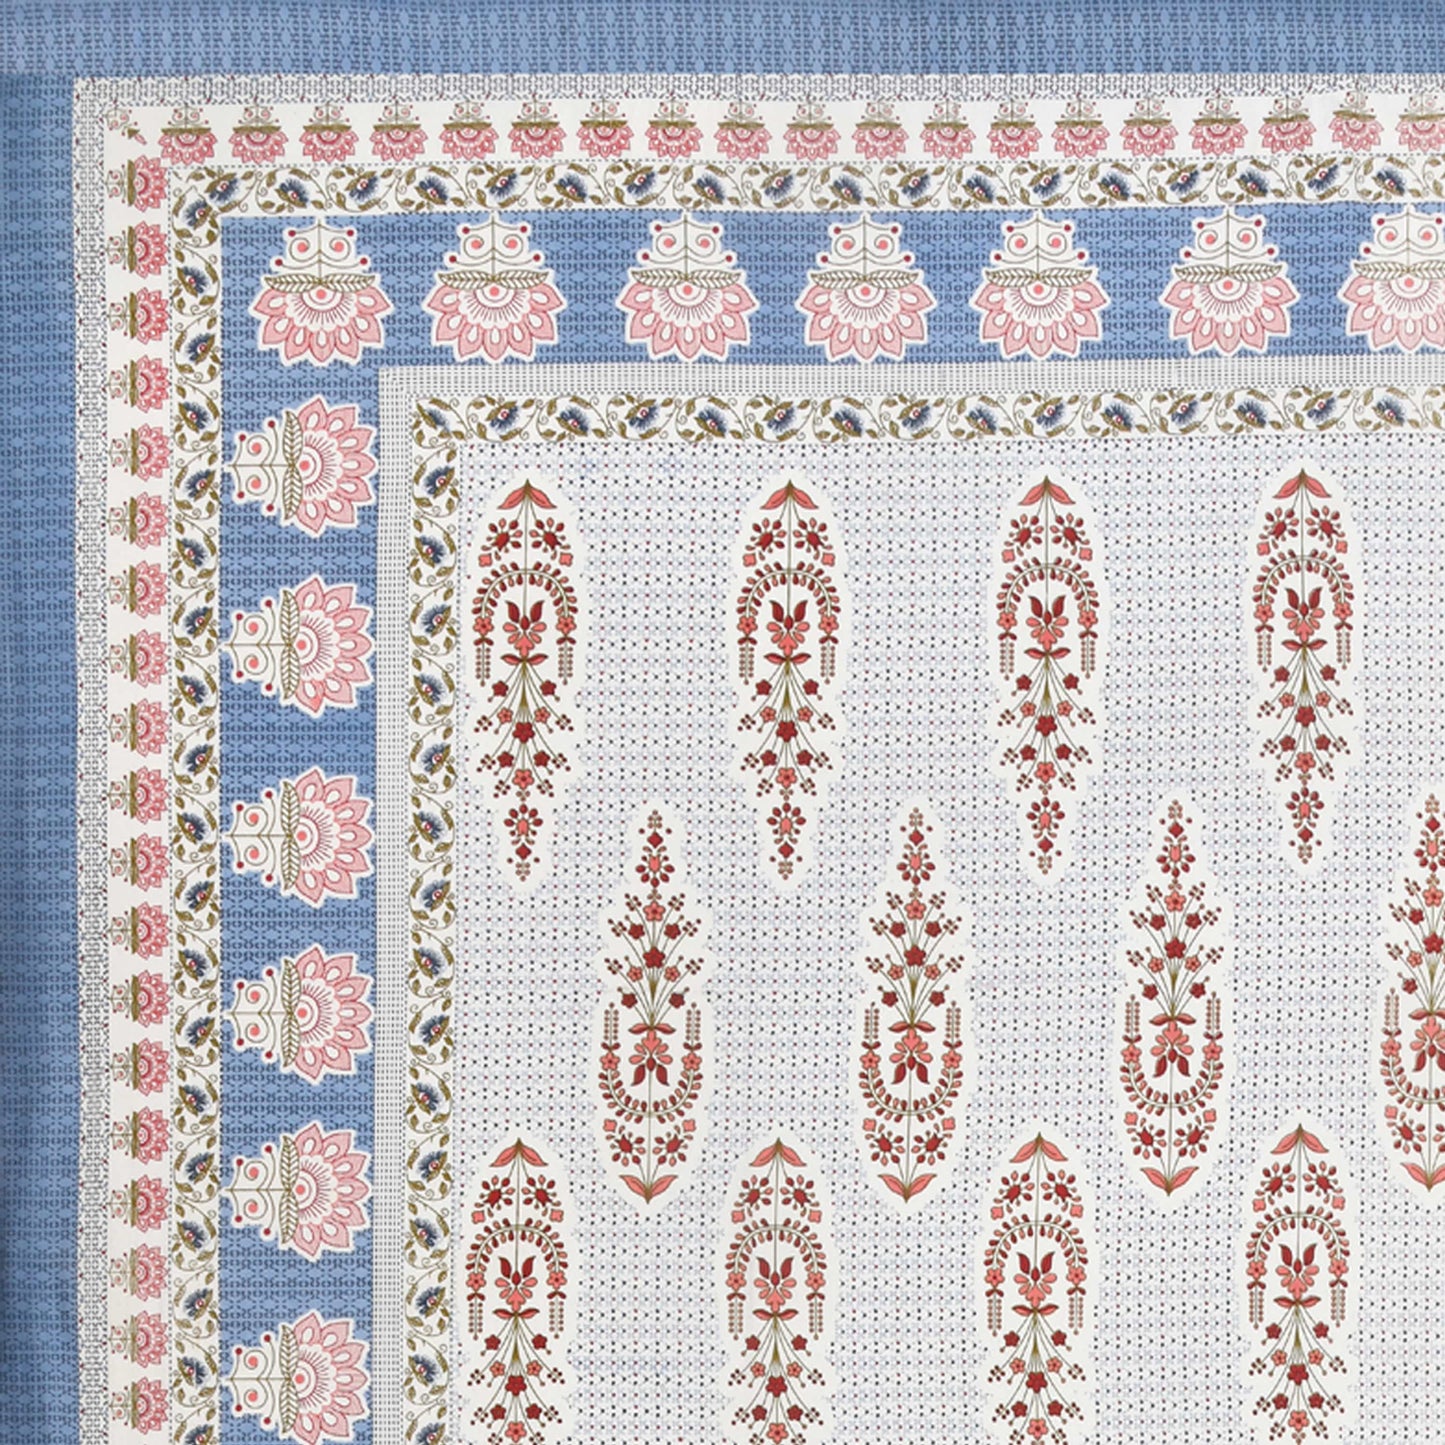 Royal Motif Jaipuri Bedsheet Double Bed (90x108 inch)